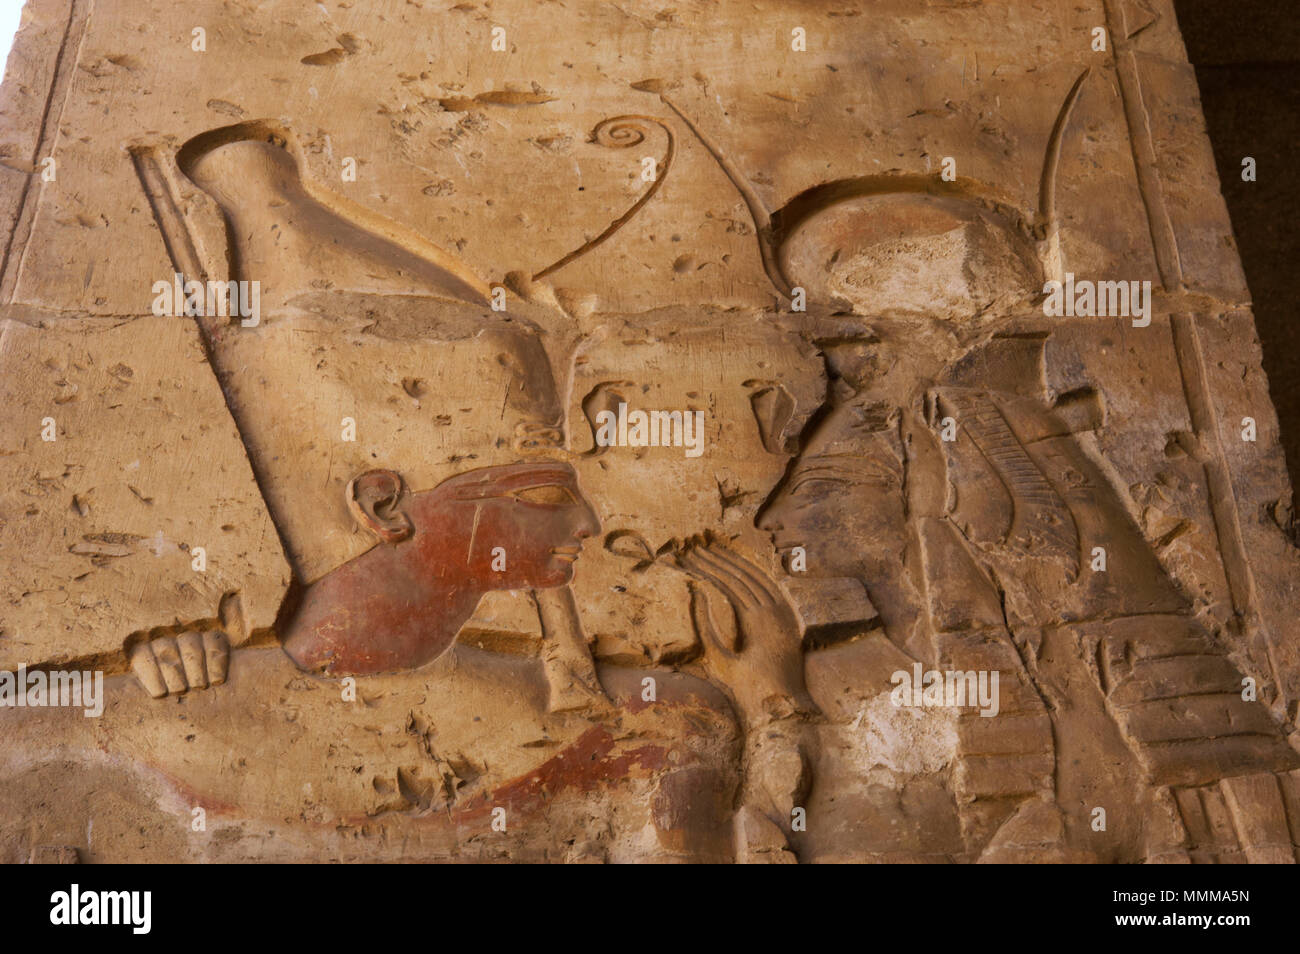 L'Égypte. Abydos. Temple de Seti I. nouveau royaume. 19e dynastie. Pharaon portant la double couronne recevant l'ankh (symbole de vie) à partir de la déesse Isis. Soulagement avec polychrome d'origine, détail. Banque D'Images